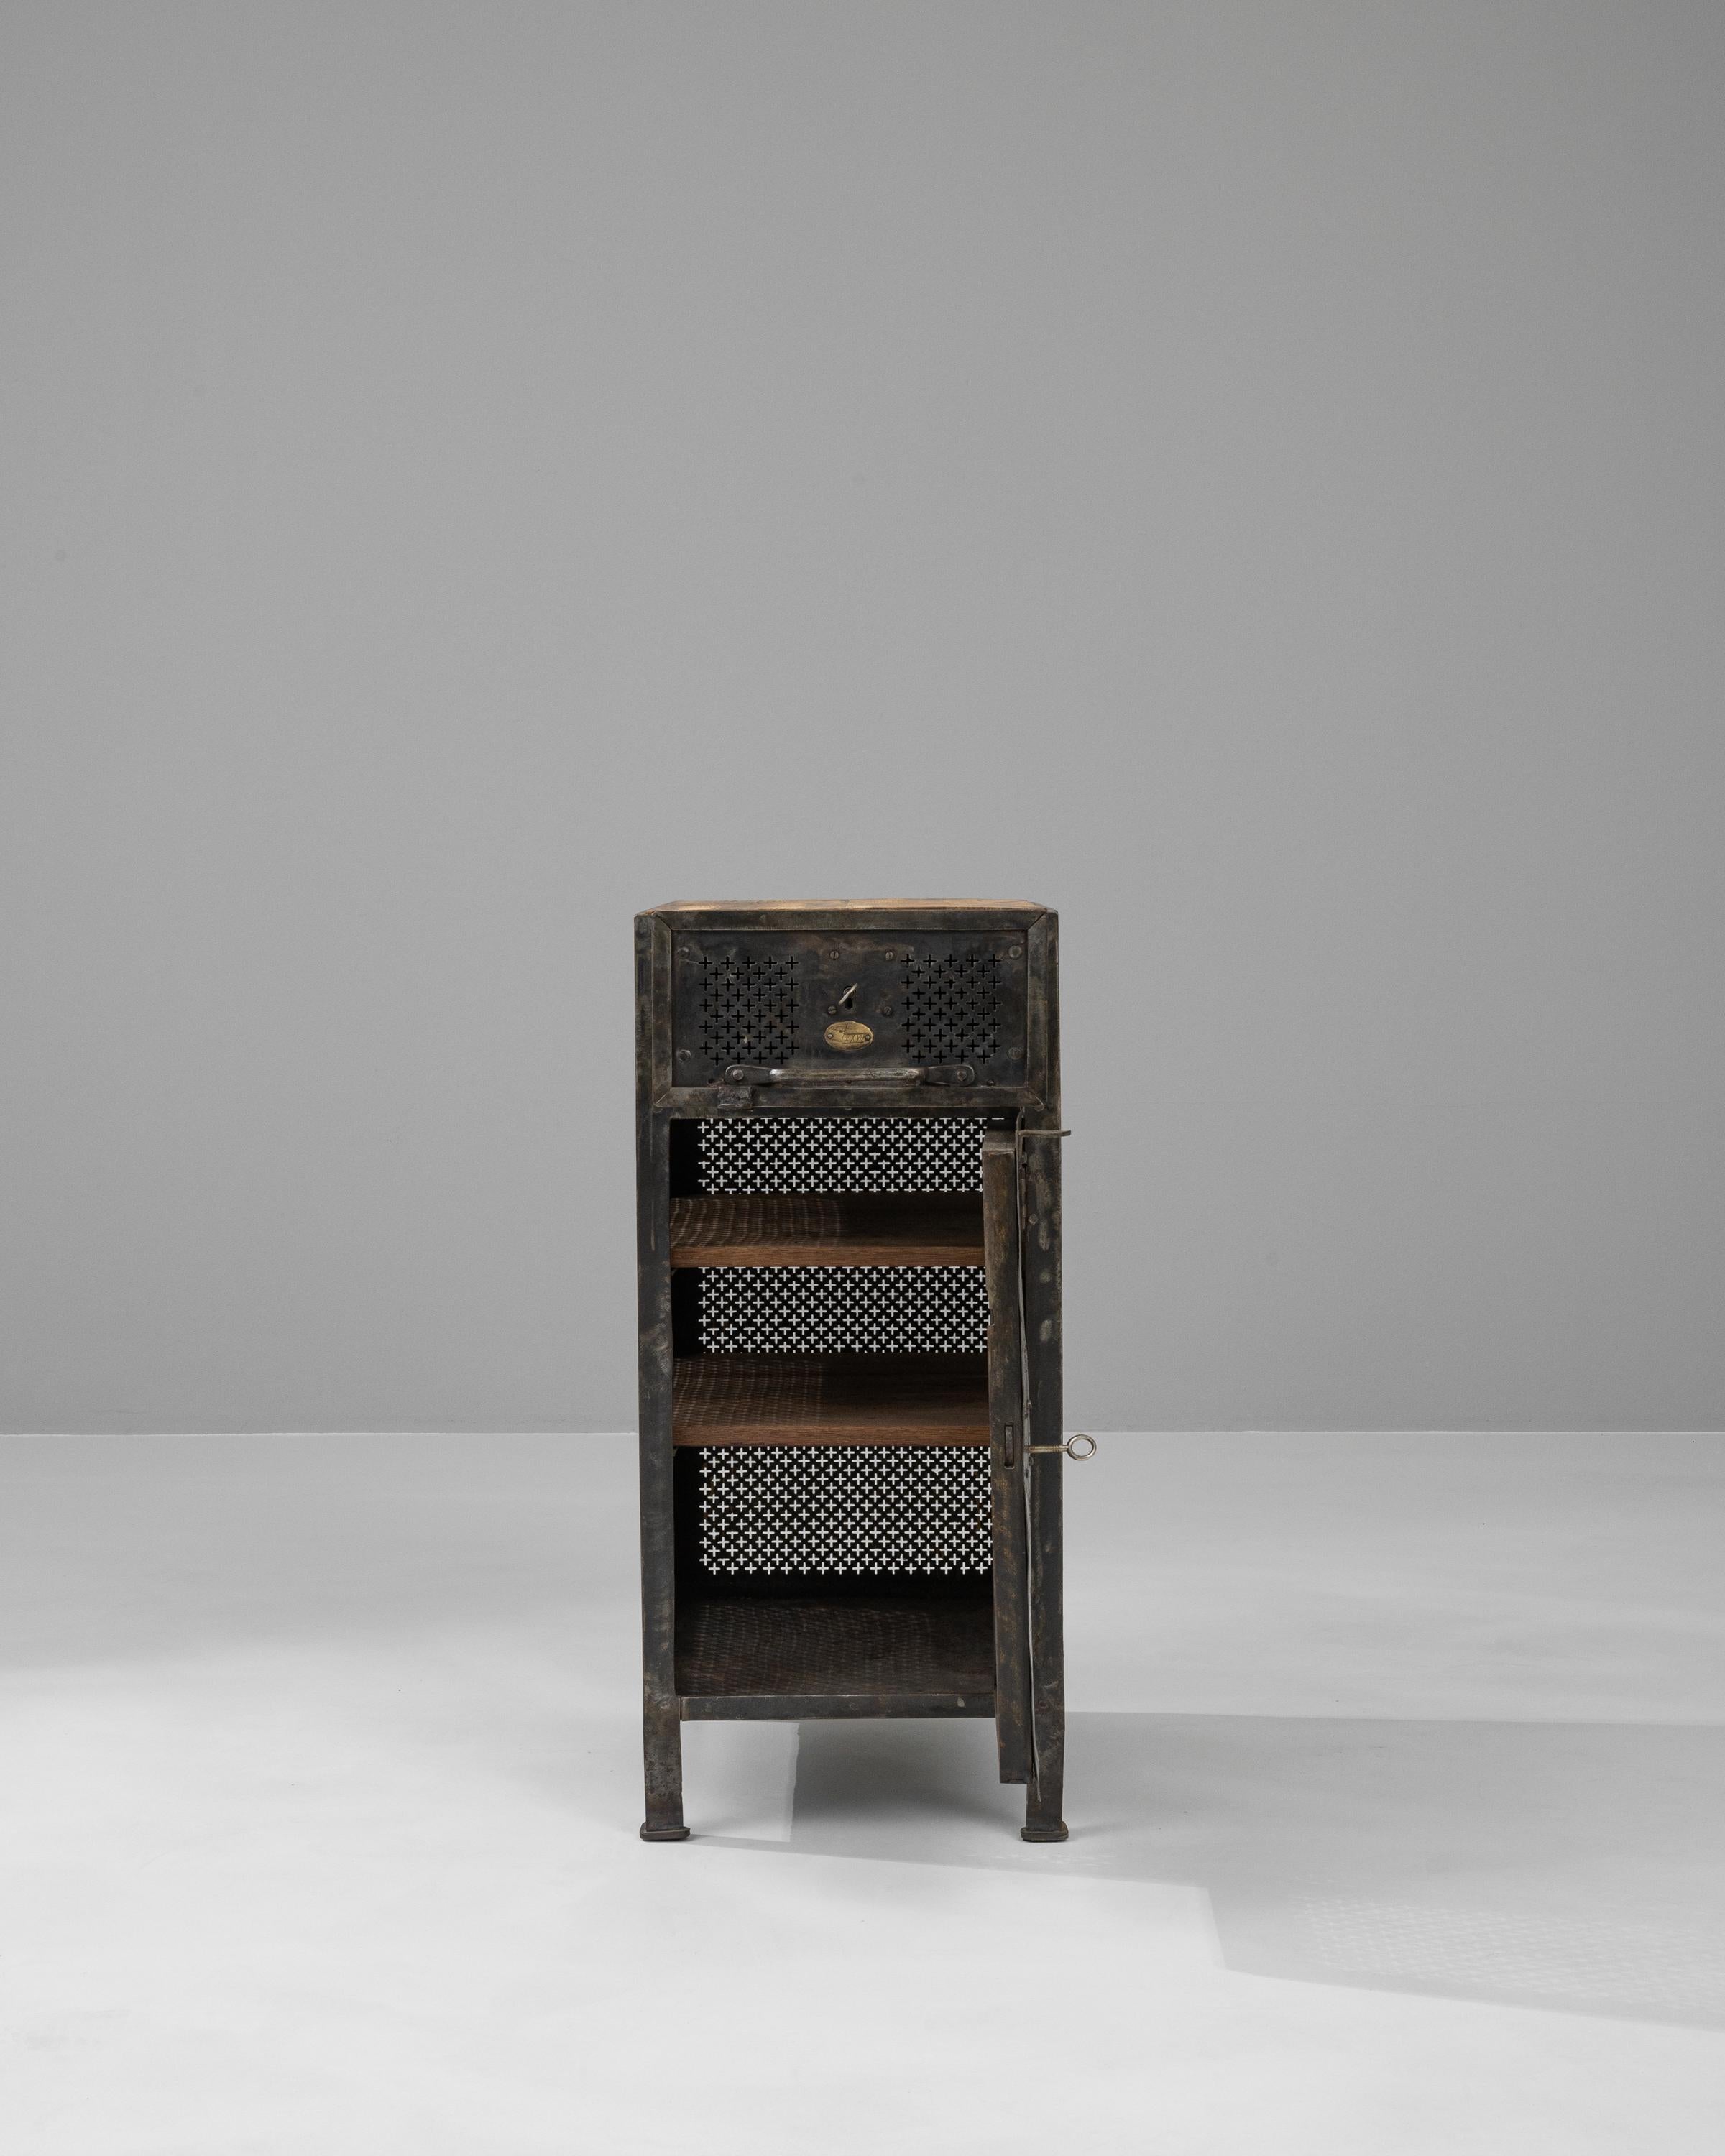 Dieser Nachttisch aus französischem Metall des frühen 20. Jahrhunderts verleiht der klassischen Schlafzimmereinrichtung einen industriellen Touch. Die Kombination aus robustem, mit verschlungenen Mustern gestanztem Metall und einer warmen Holzplatte